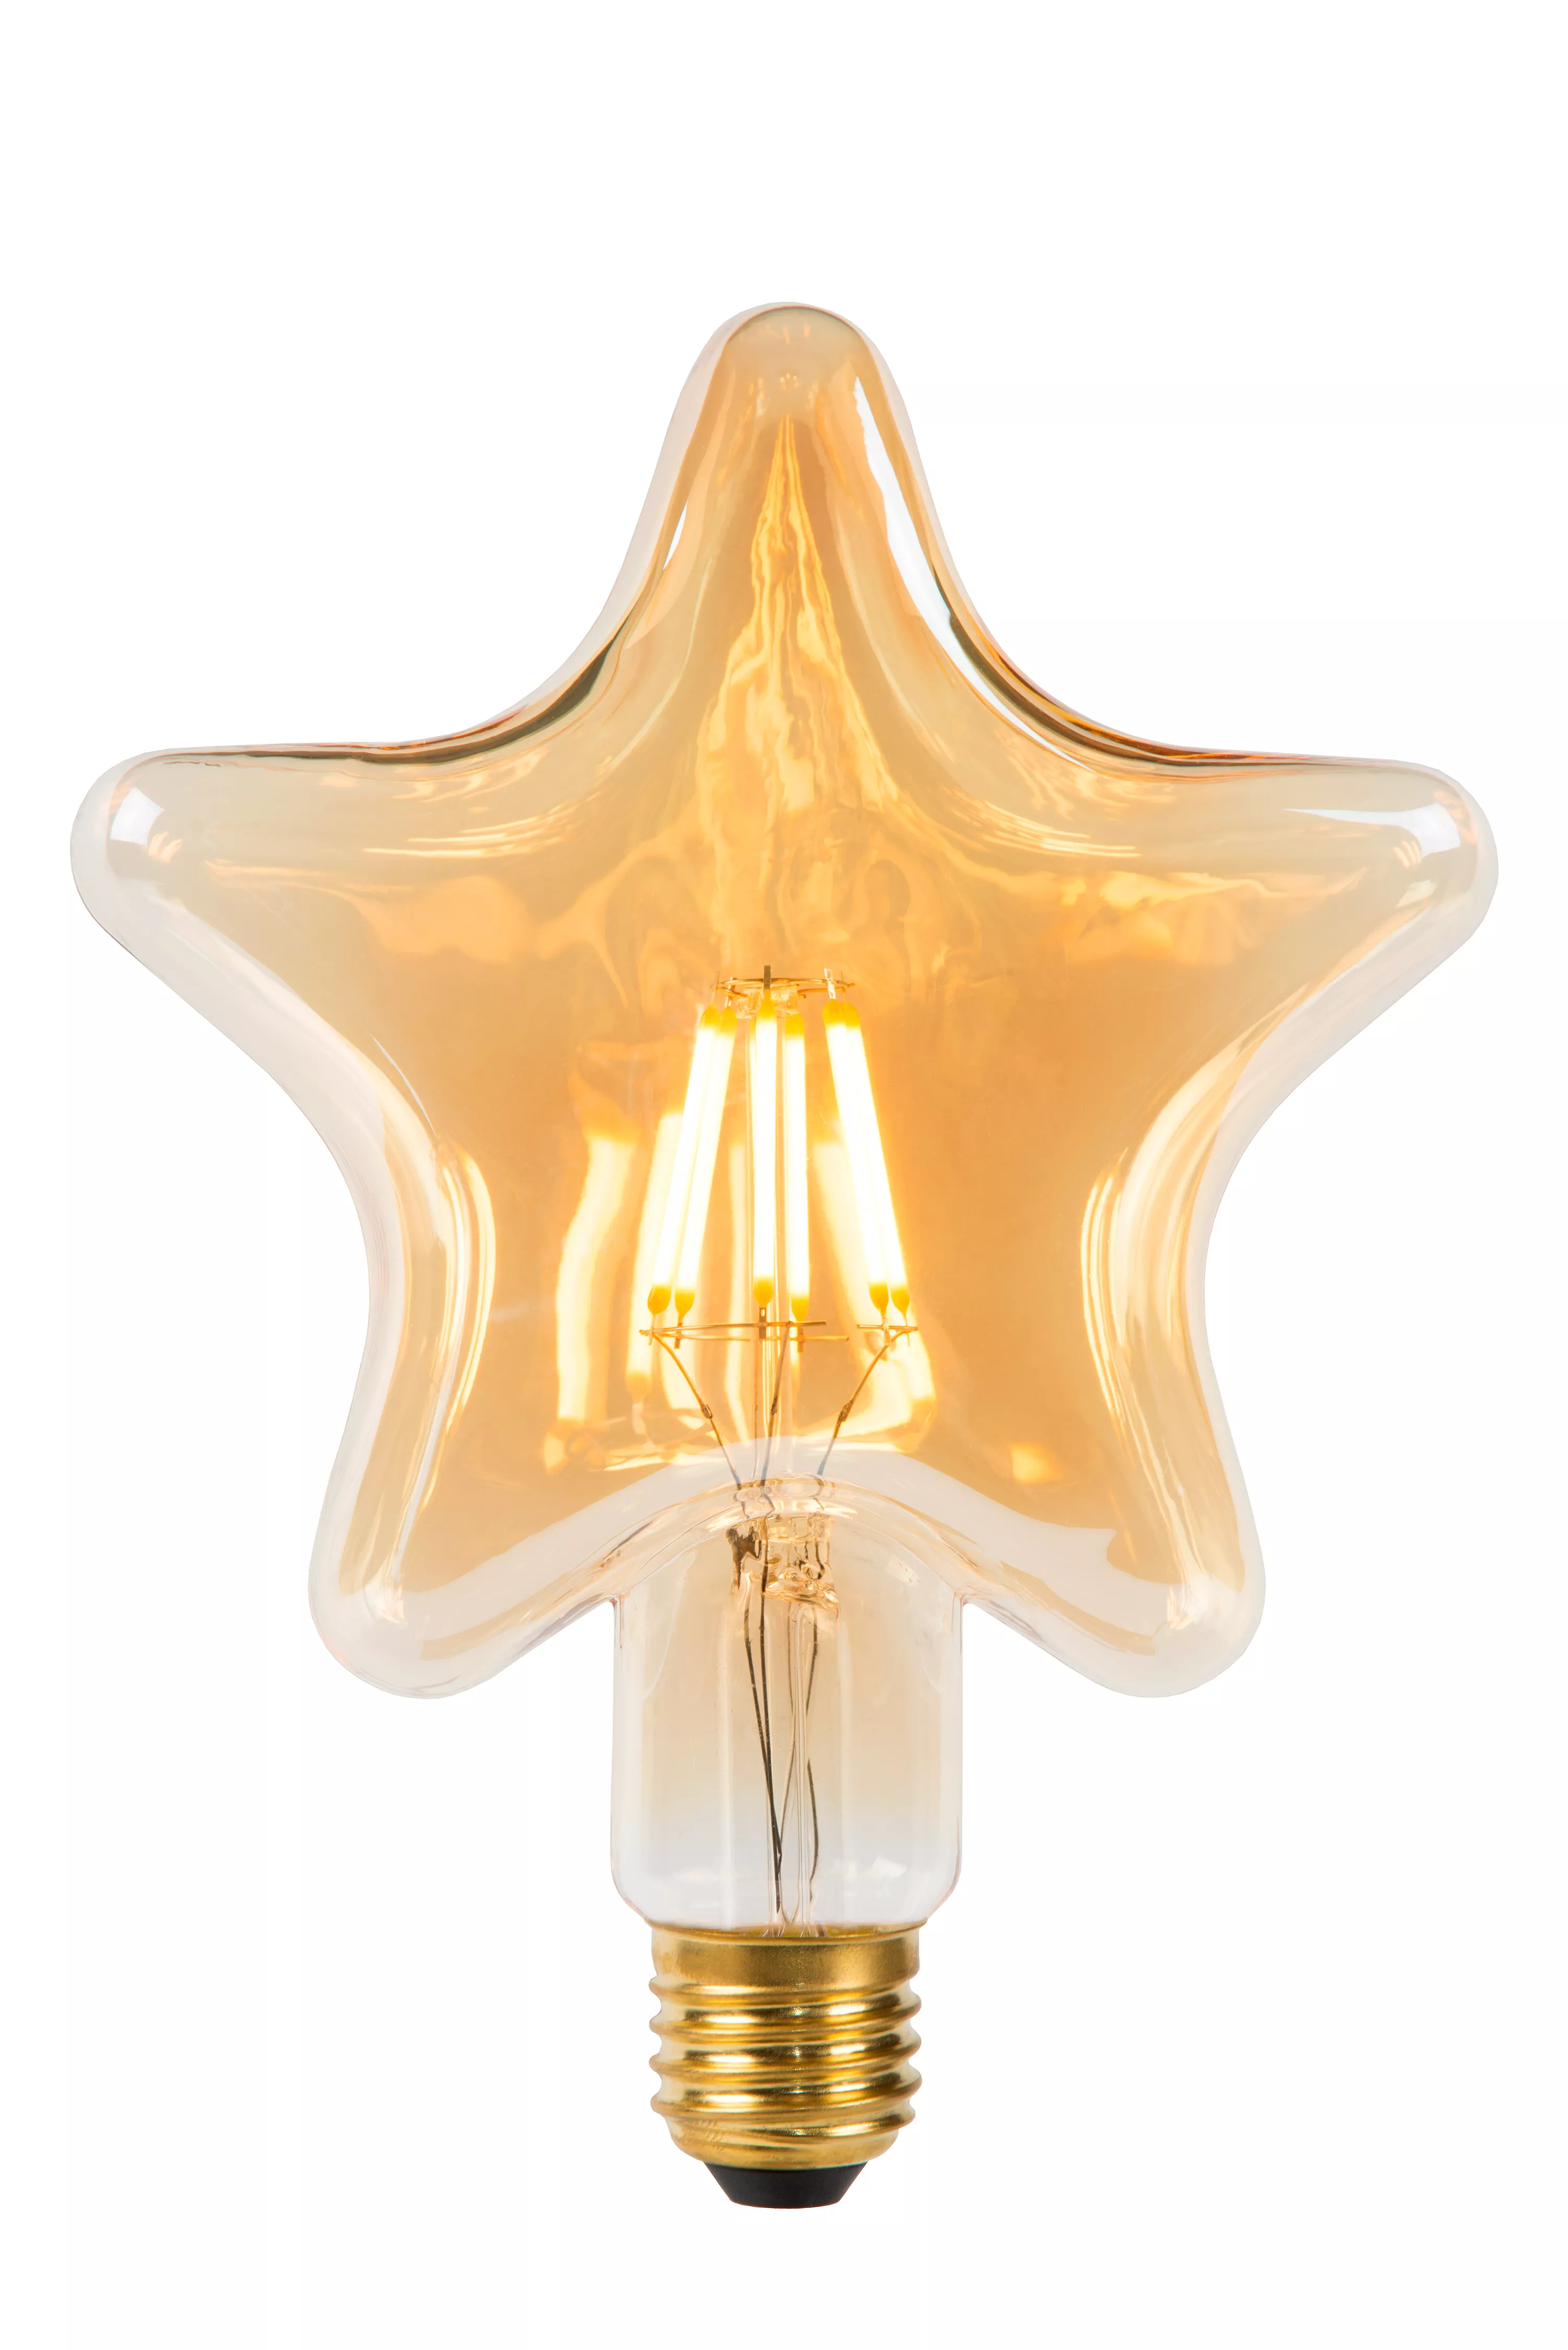 absurd Mistillid rille Lucide STAR - Filament bulb - Ø 6 cm - LED - E27 - 1x7W 2200K - Amber